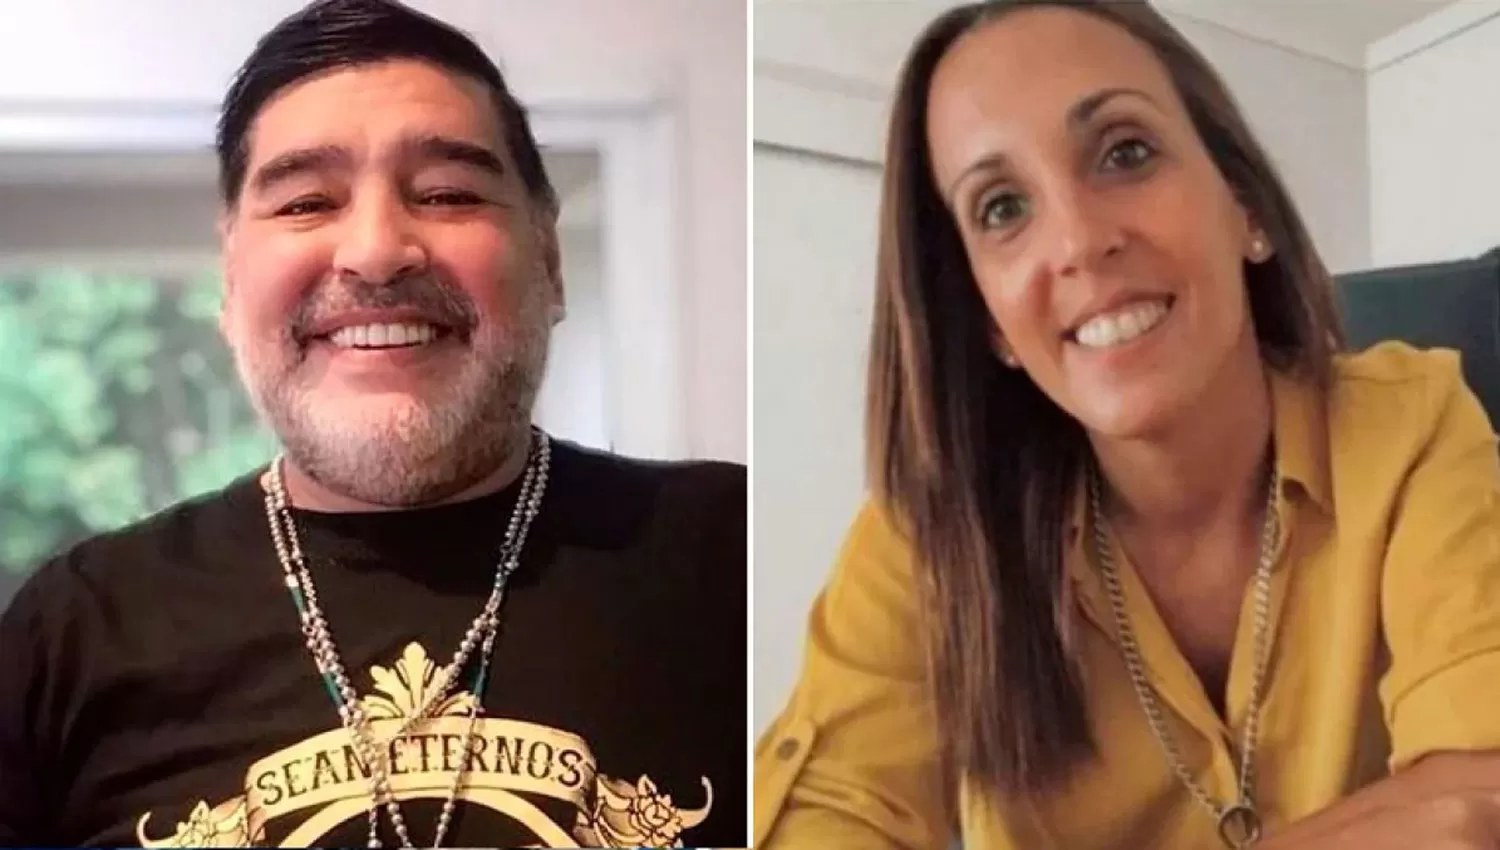 SU ROL. La investigación busca información sobre el historial clínico de Maradona y su relación conAgustina Cosachov